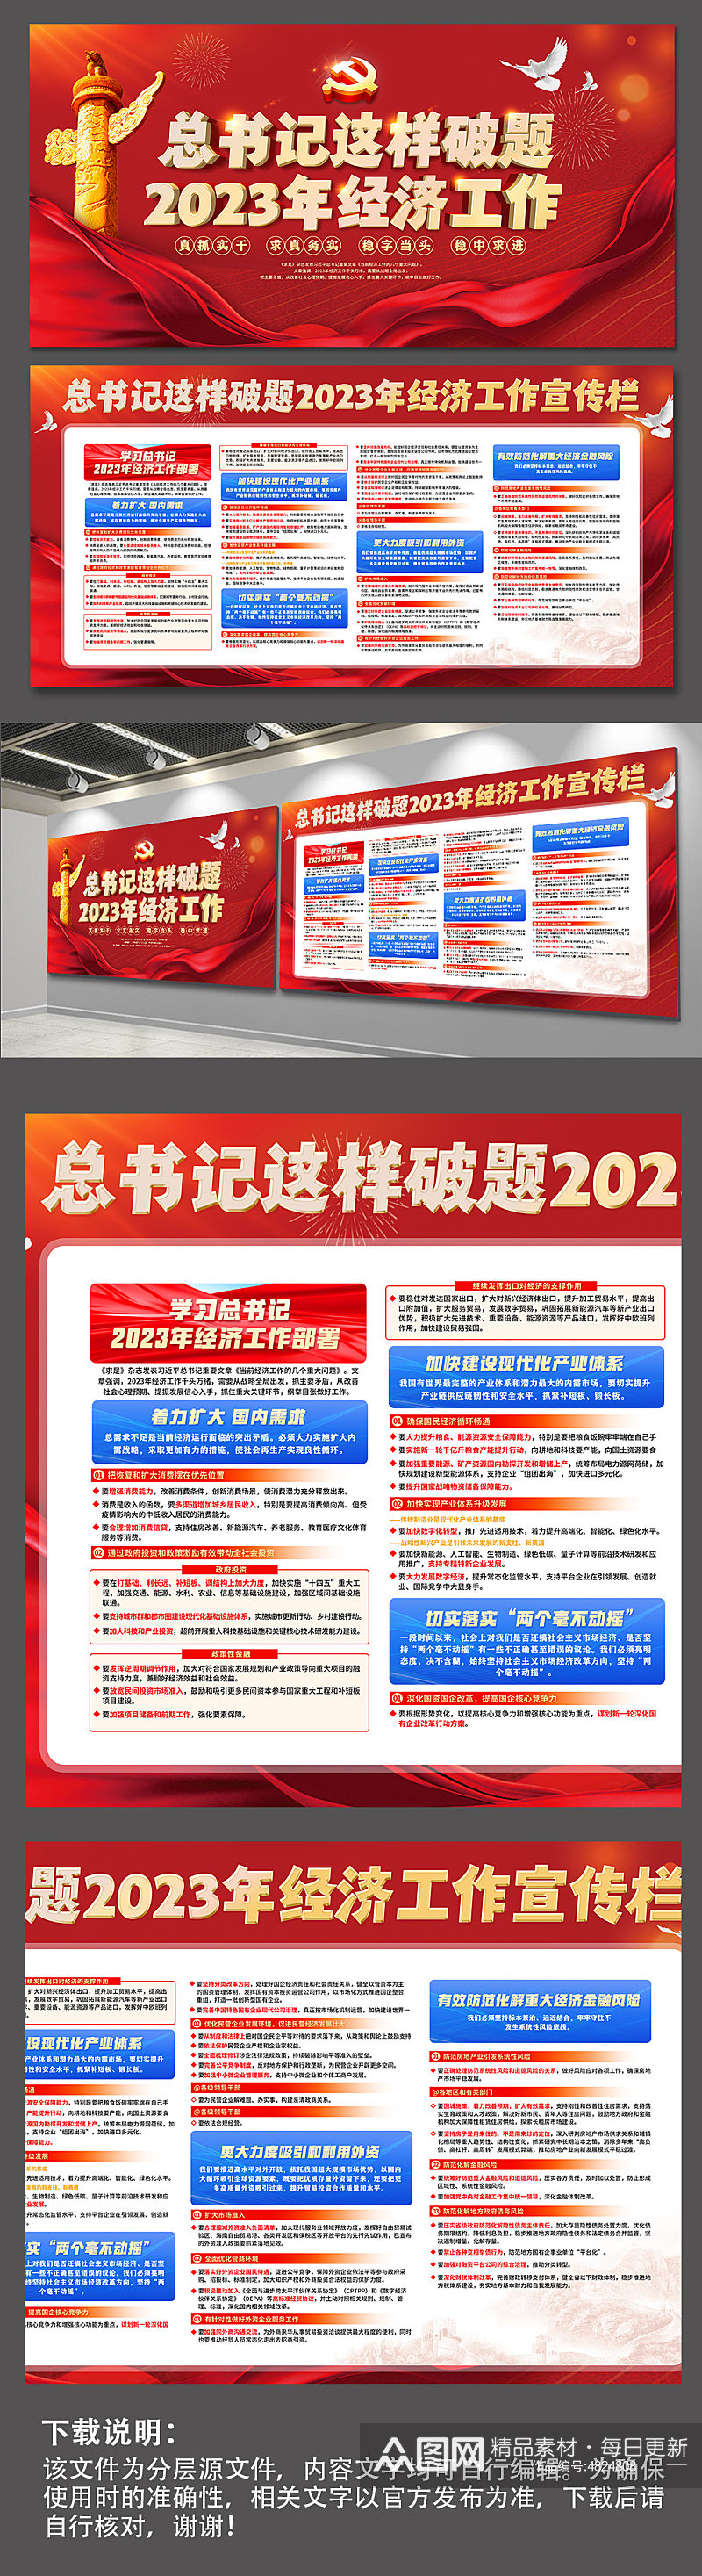 2023中央经济工作会议精神展板宣传栏素材